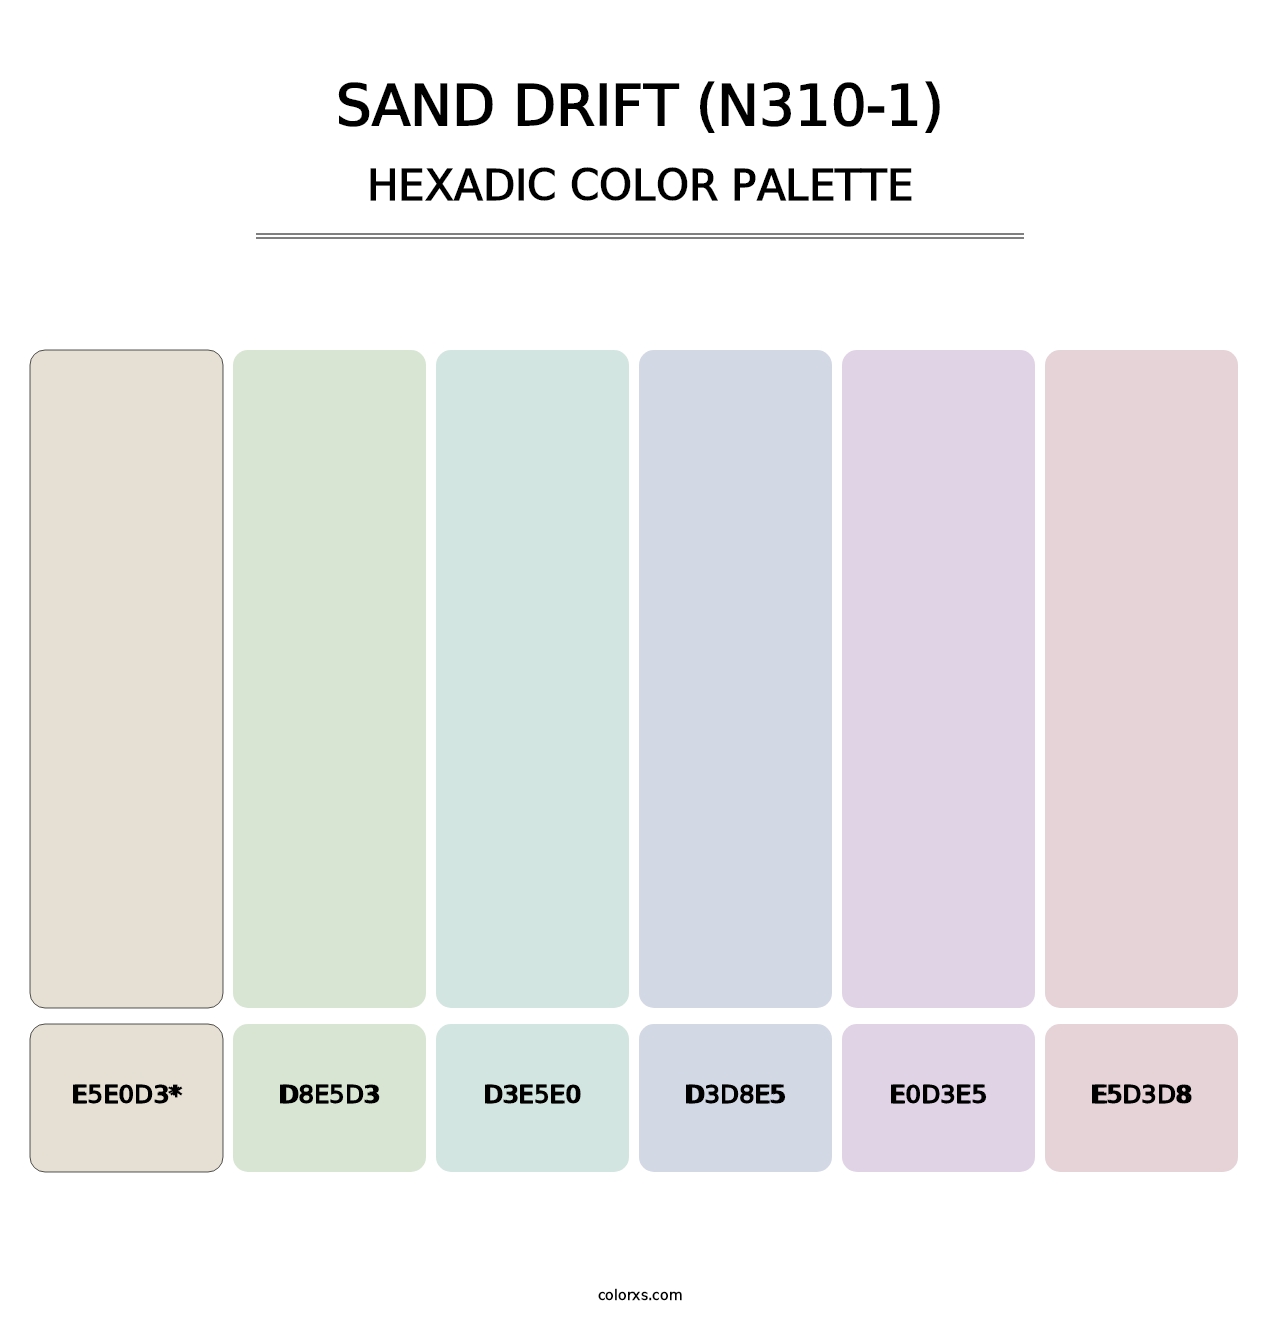 Sand Drift (N310-1) - Hexadic Color Palette